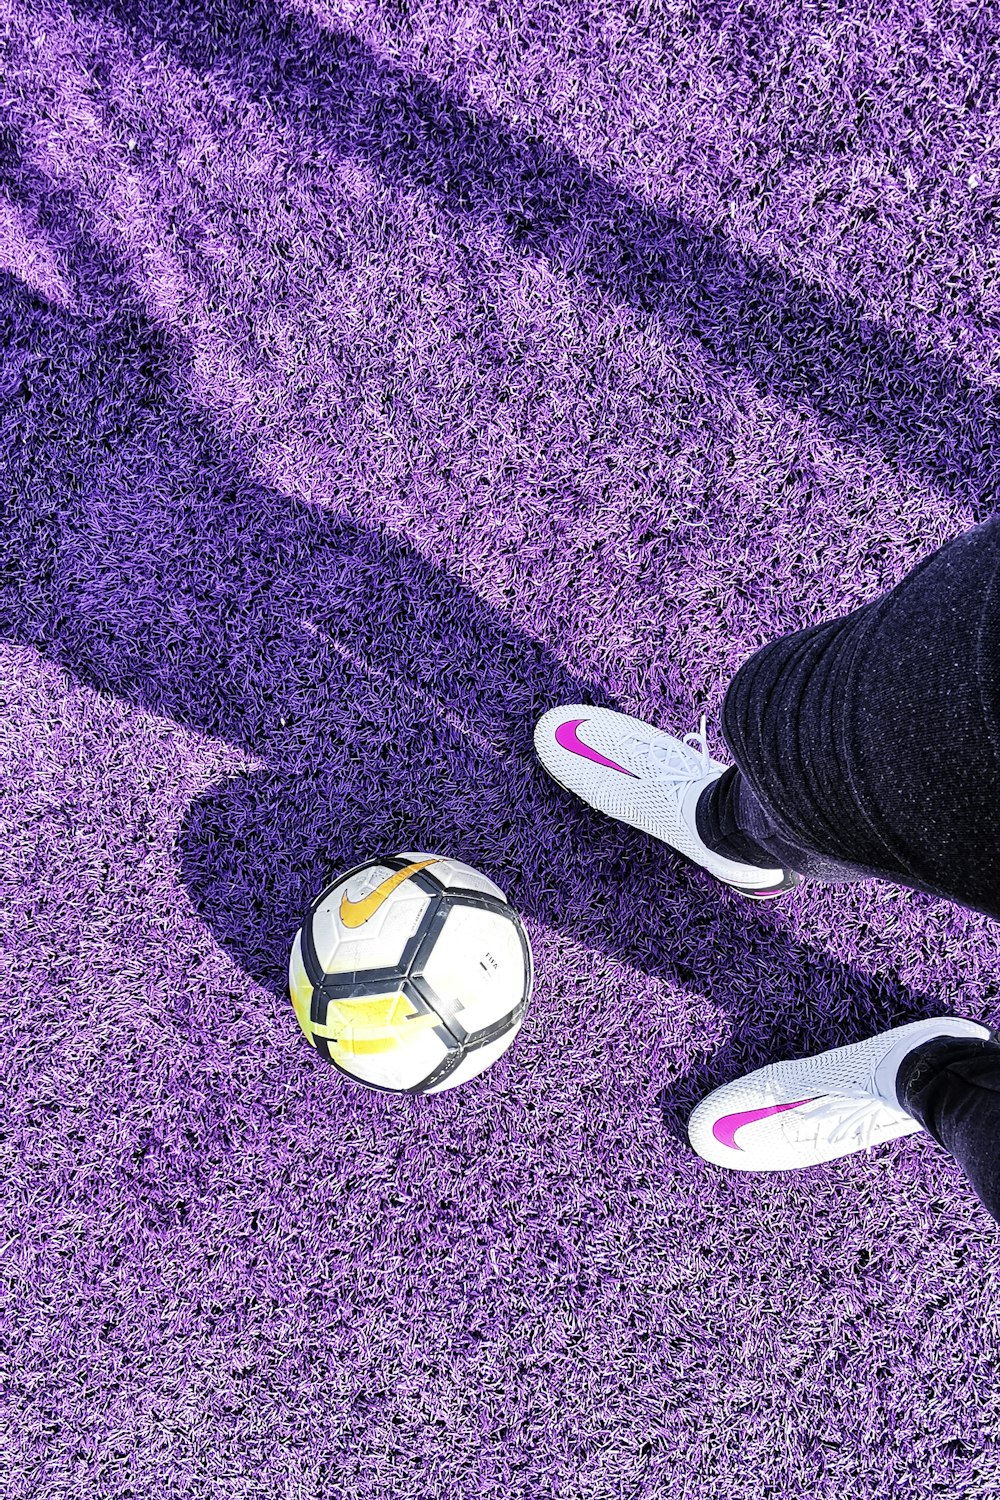 紫色のカーペットの上にボールを持つ人の足